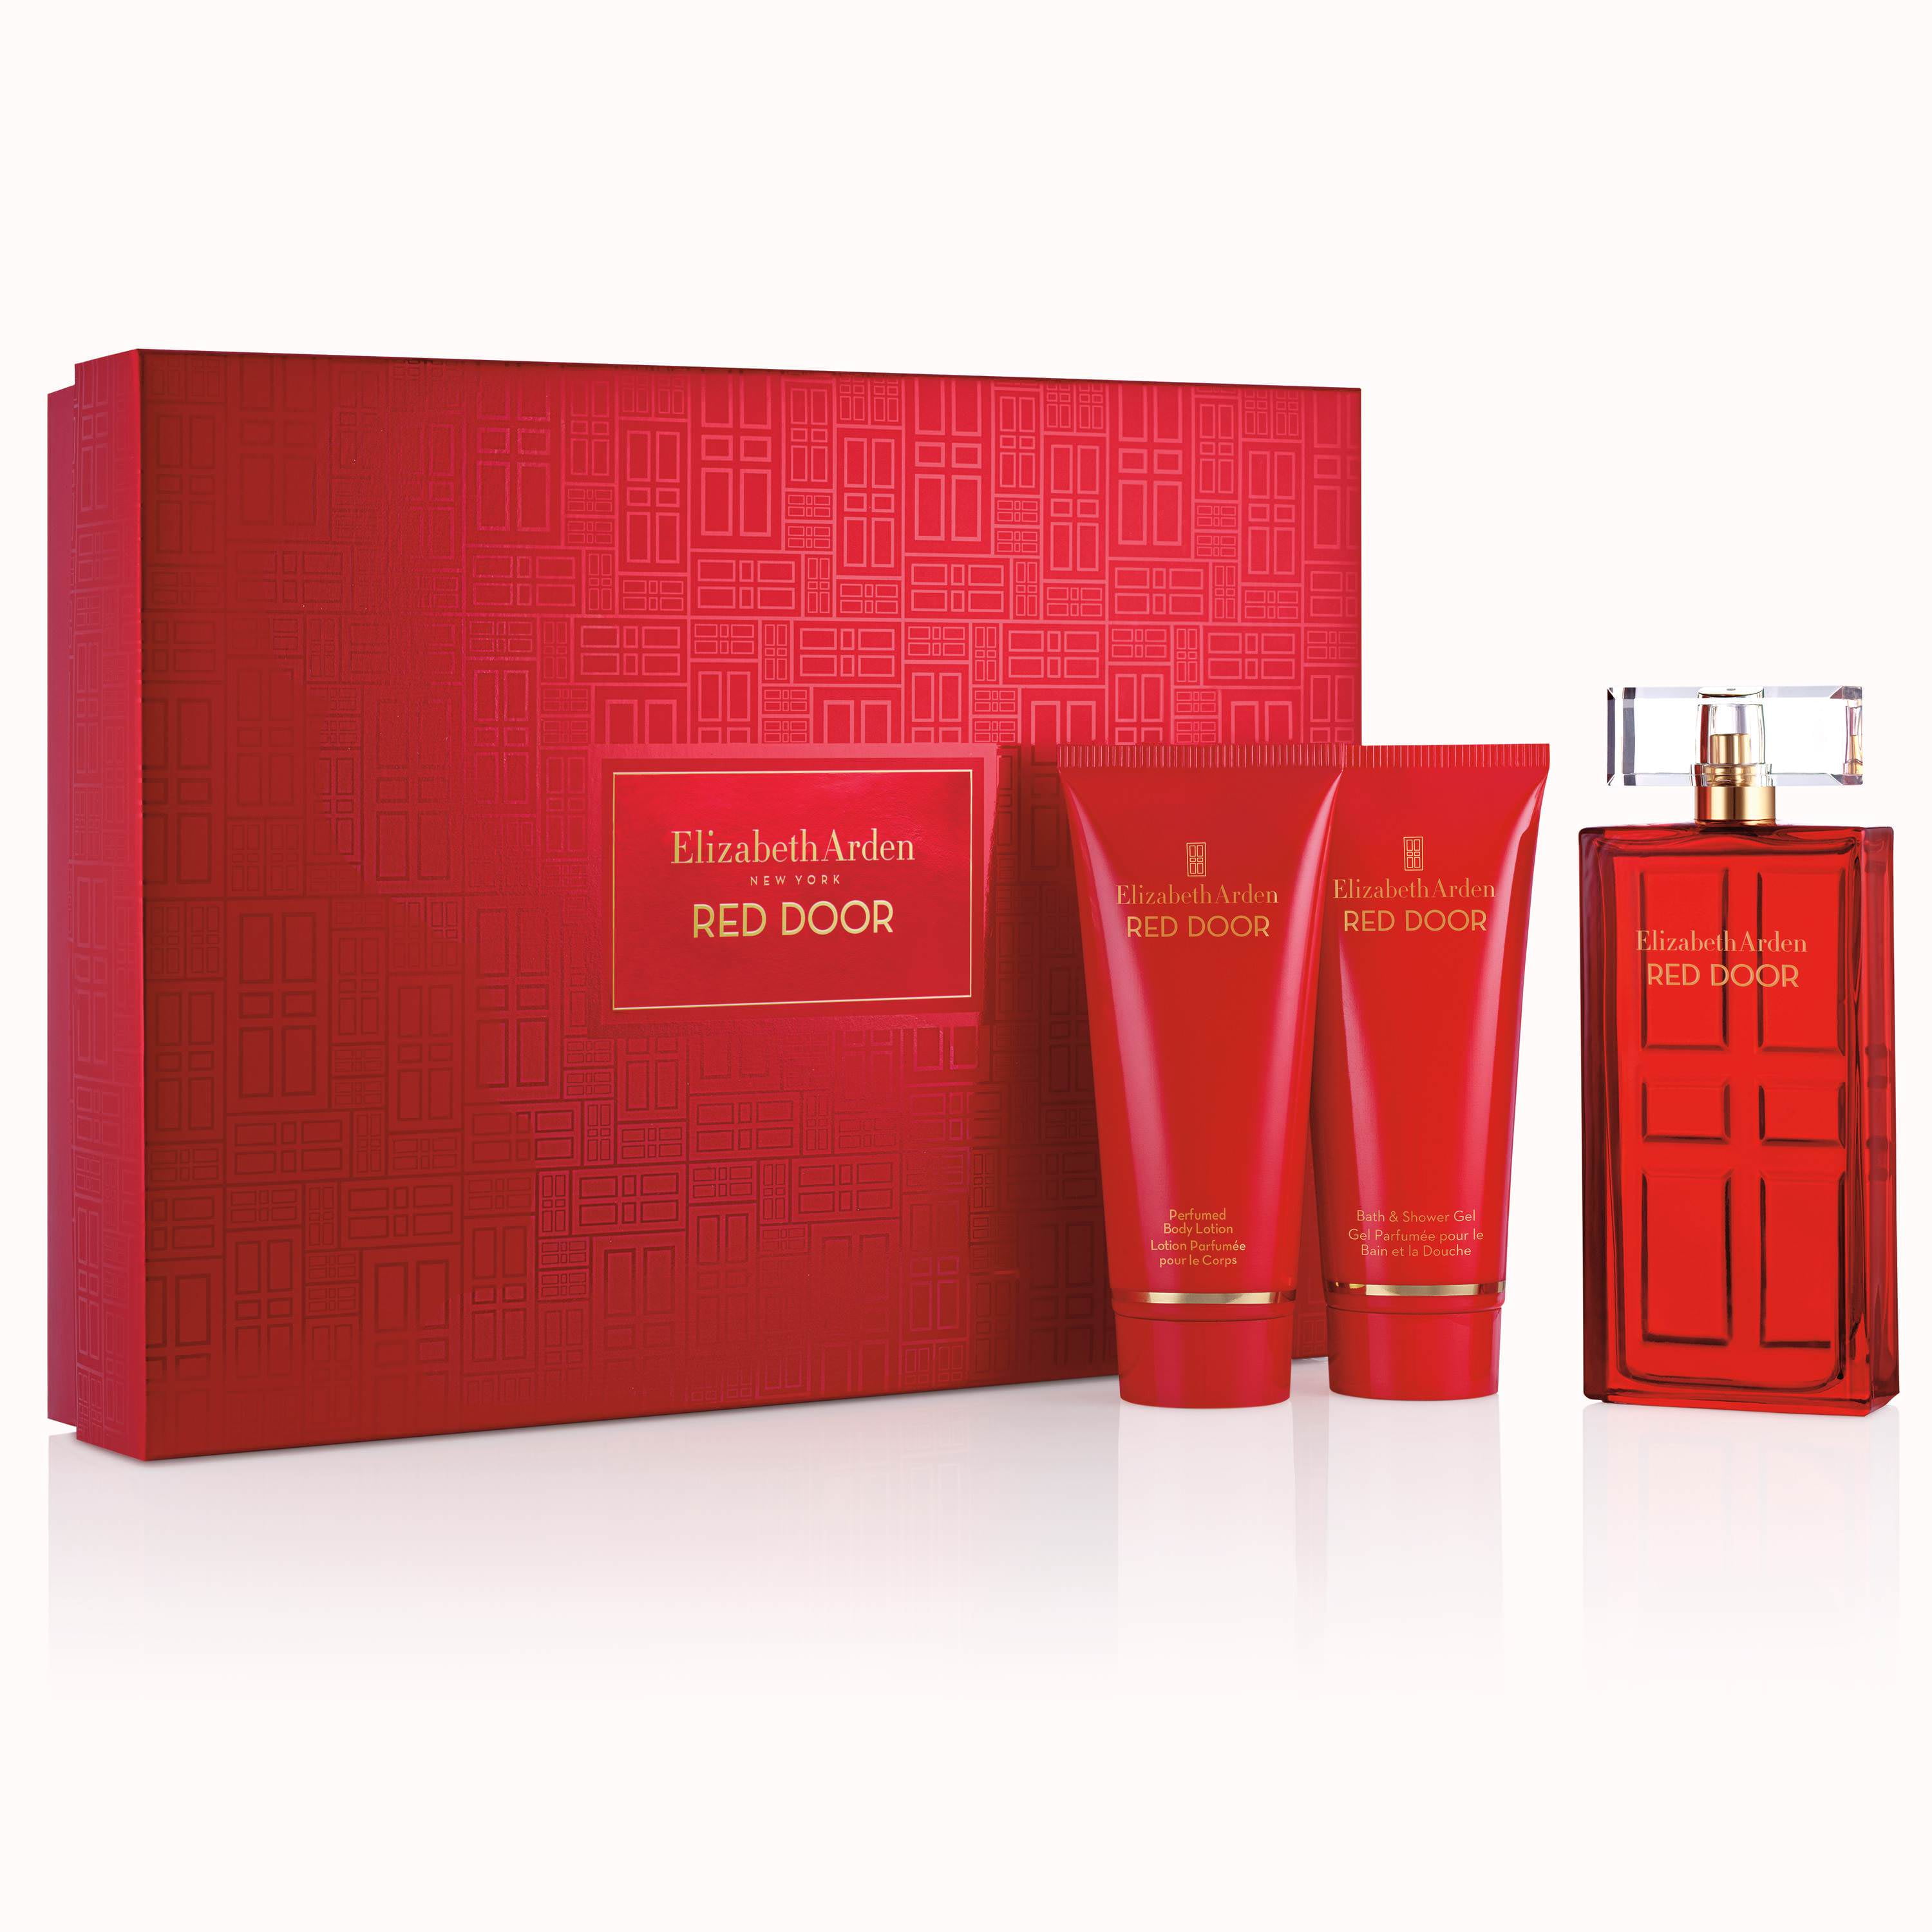 Elizabeth Arden Red Door Perfume Gift Set For Women, 3 Piece - 3.3 Oz ...